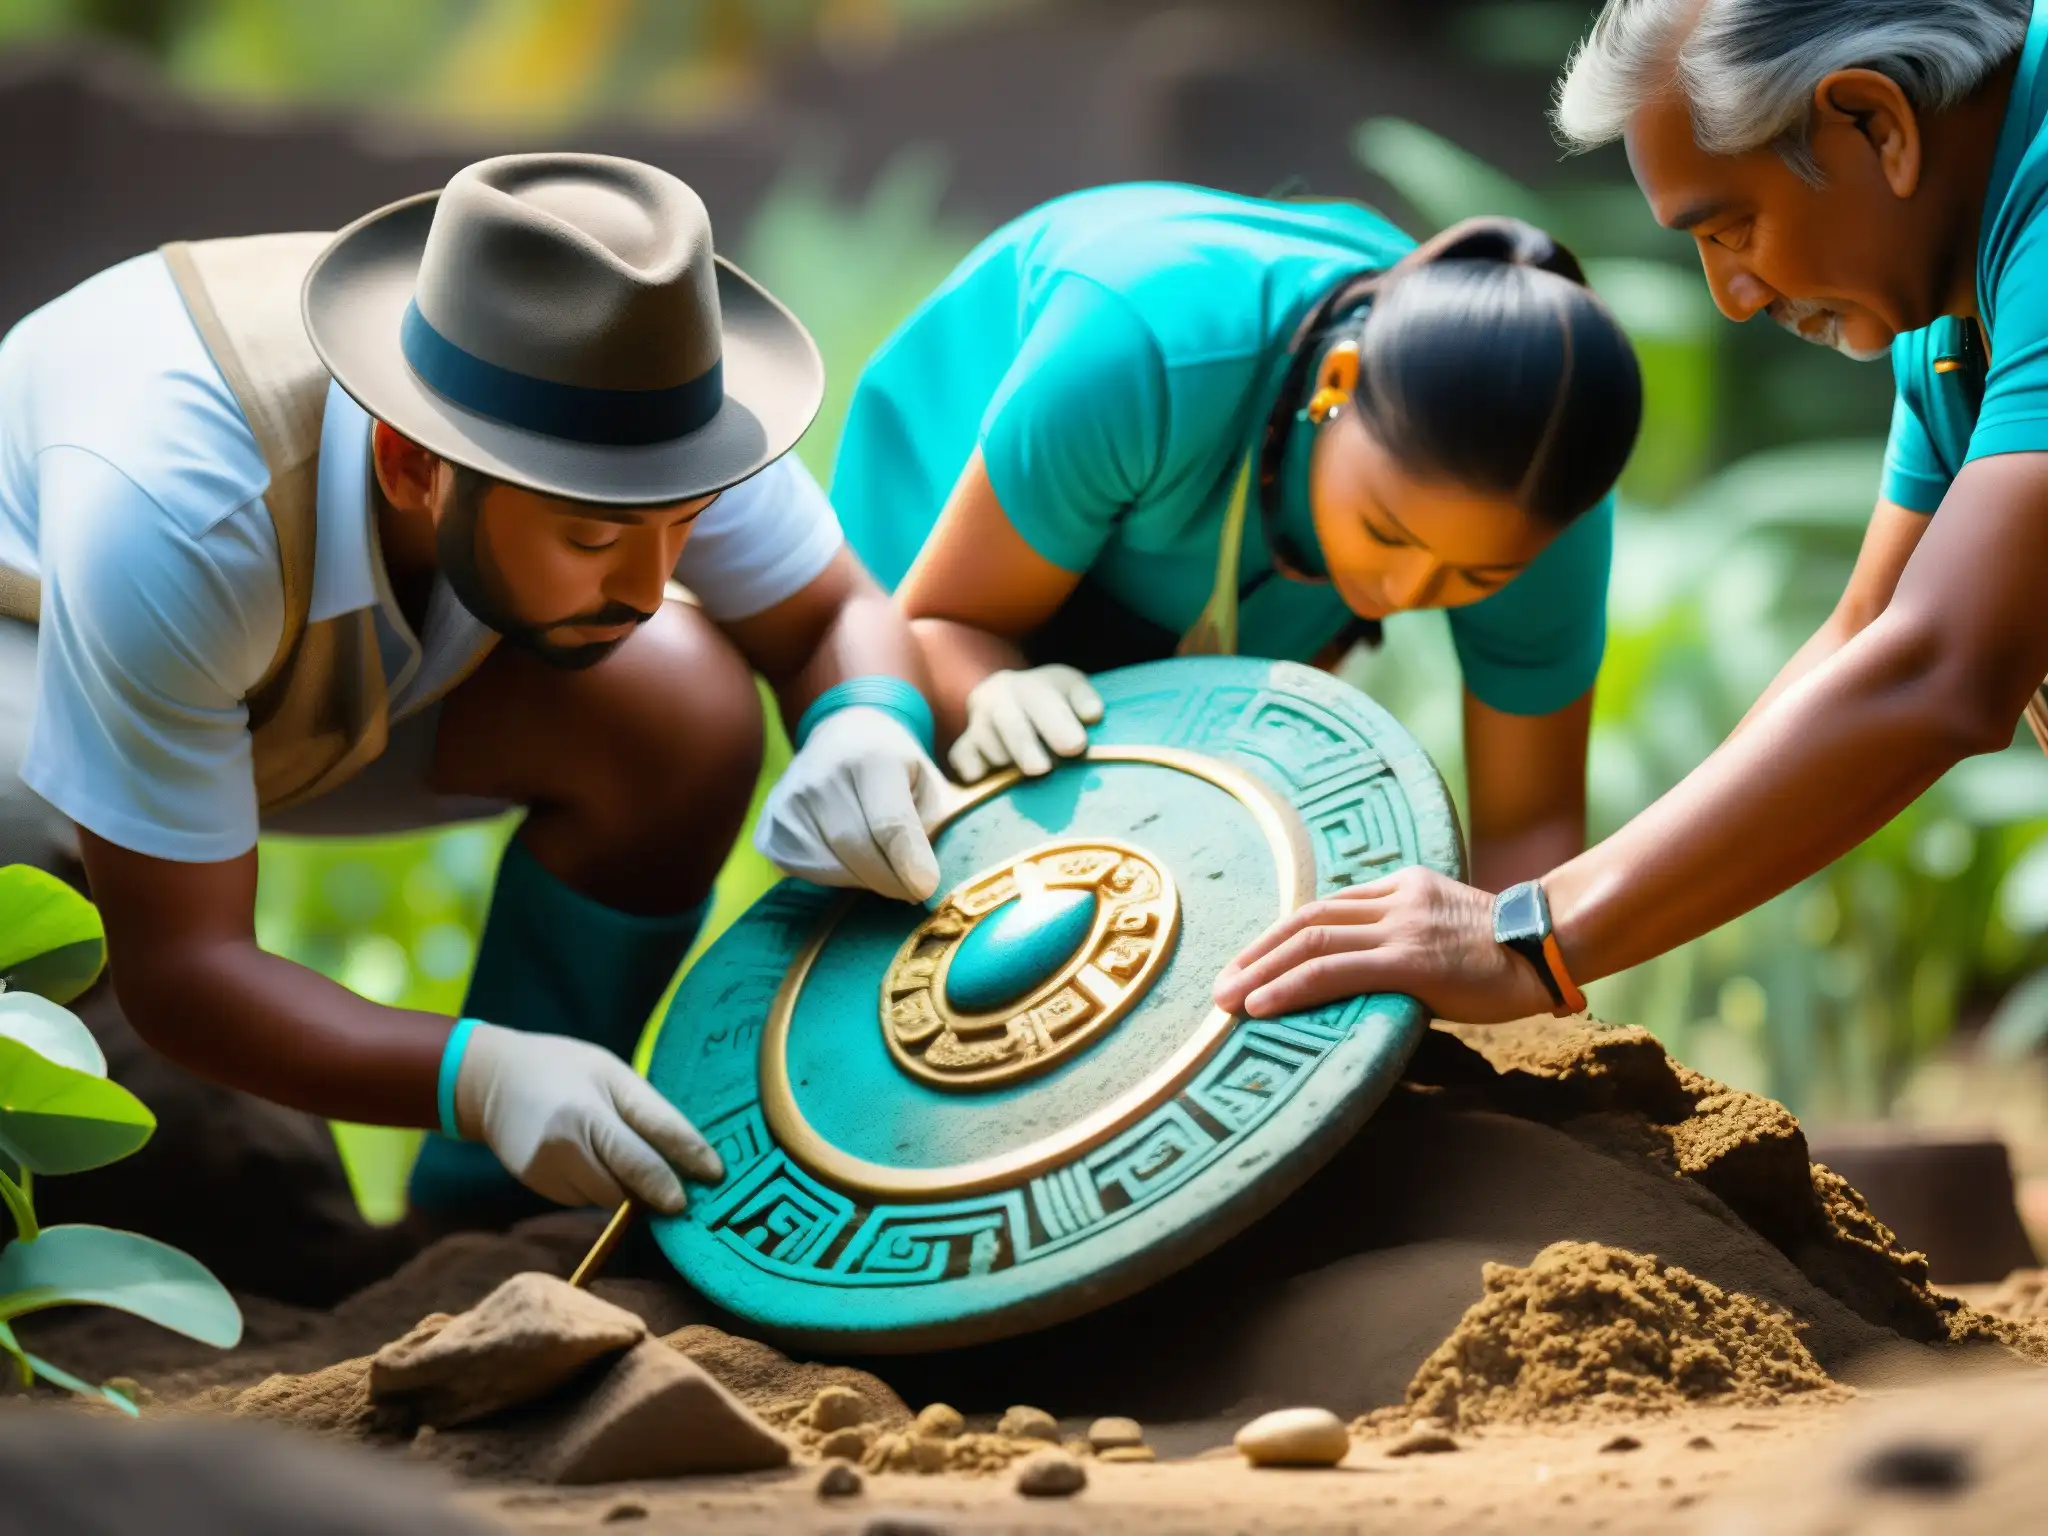 Los arqueólogos descubren el tesoro de Moctezuma entre ruinas aztecas